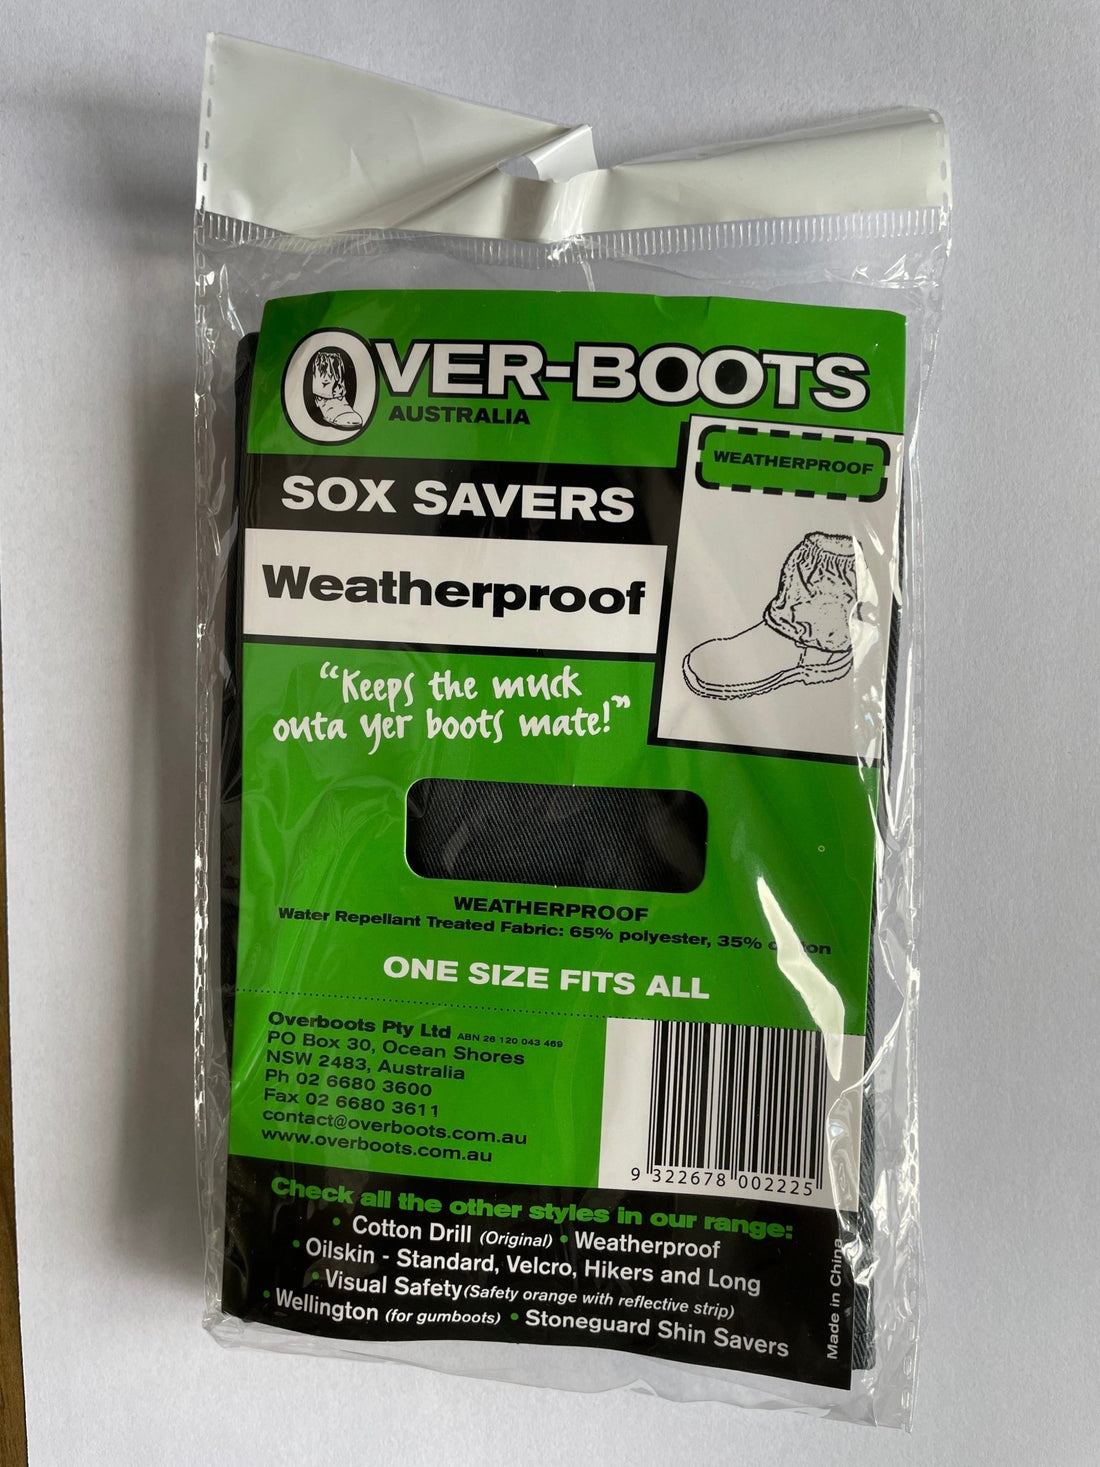 UK Weatherproof Overboots & Sox Savers - BIG Boots UK